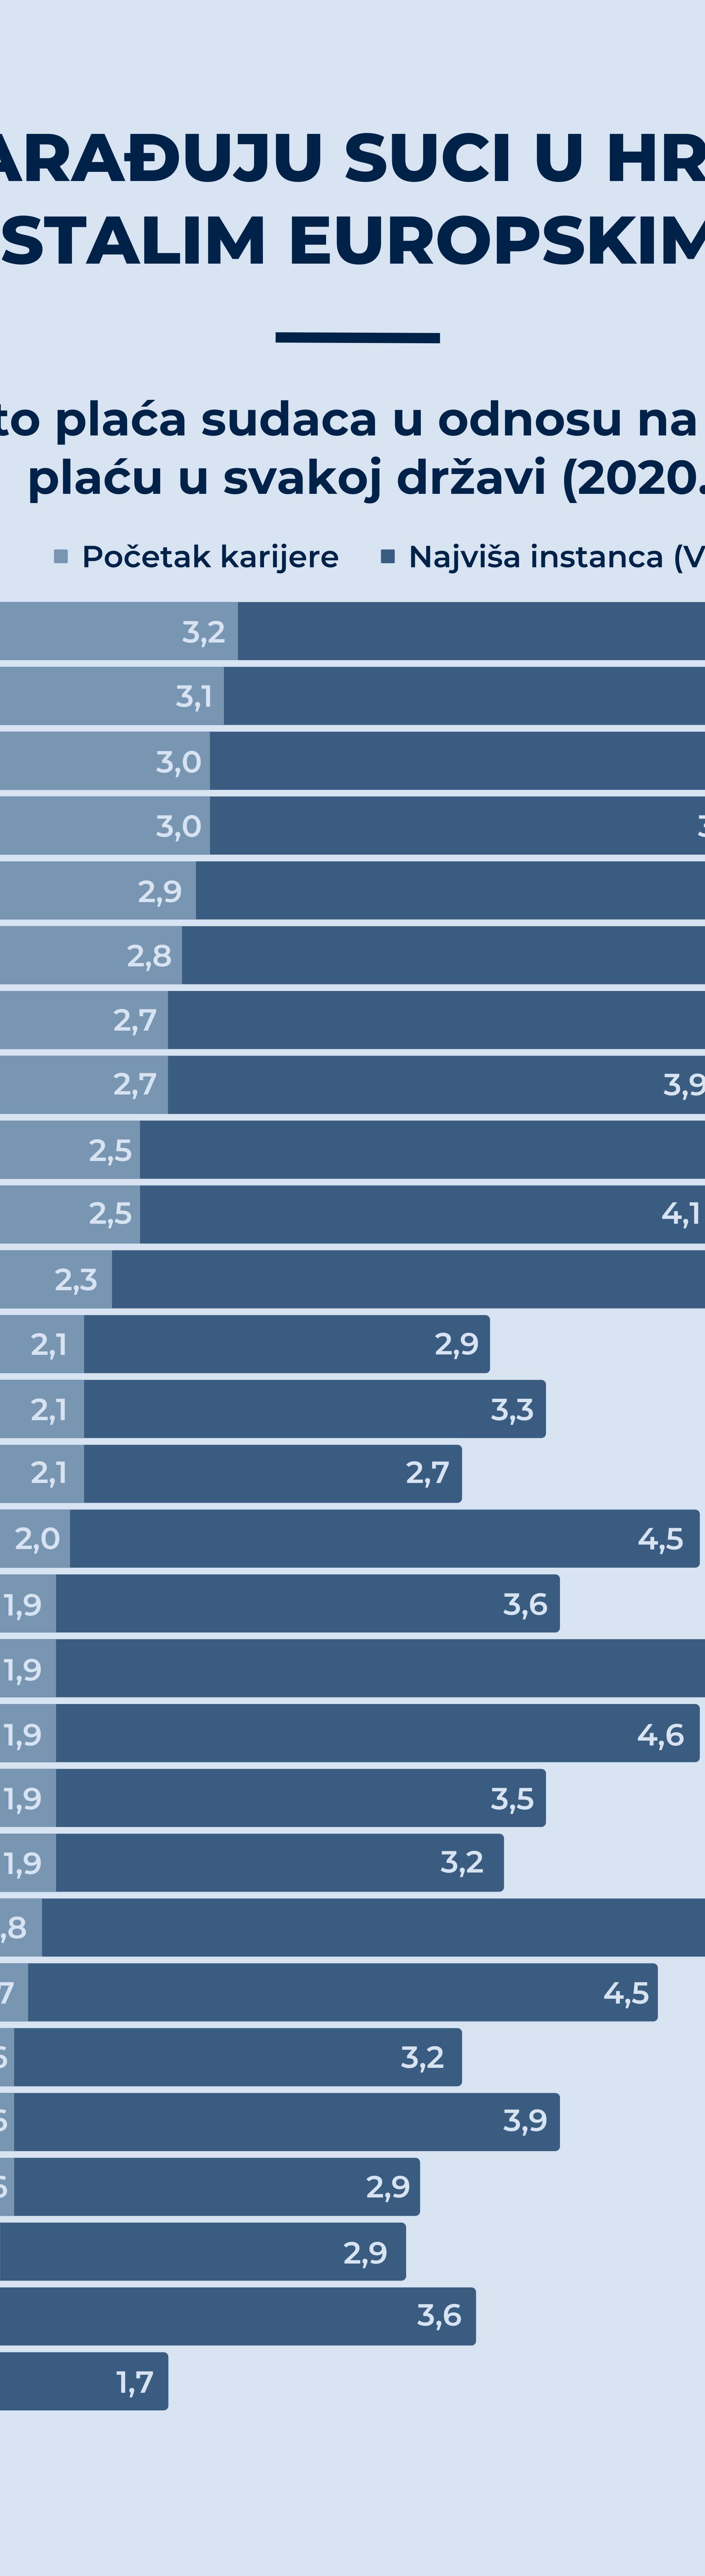 Infografika: Koliko zarađuju suci u Hrvatskoj, a koliko u drugim državama EU